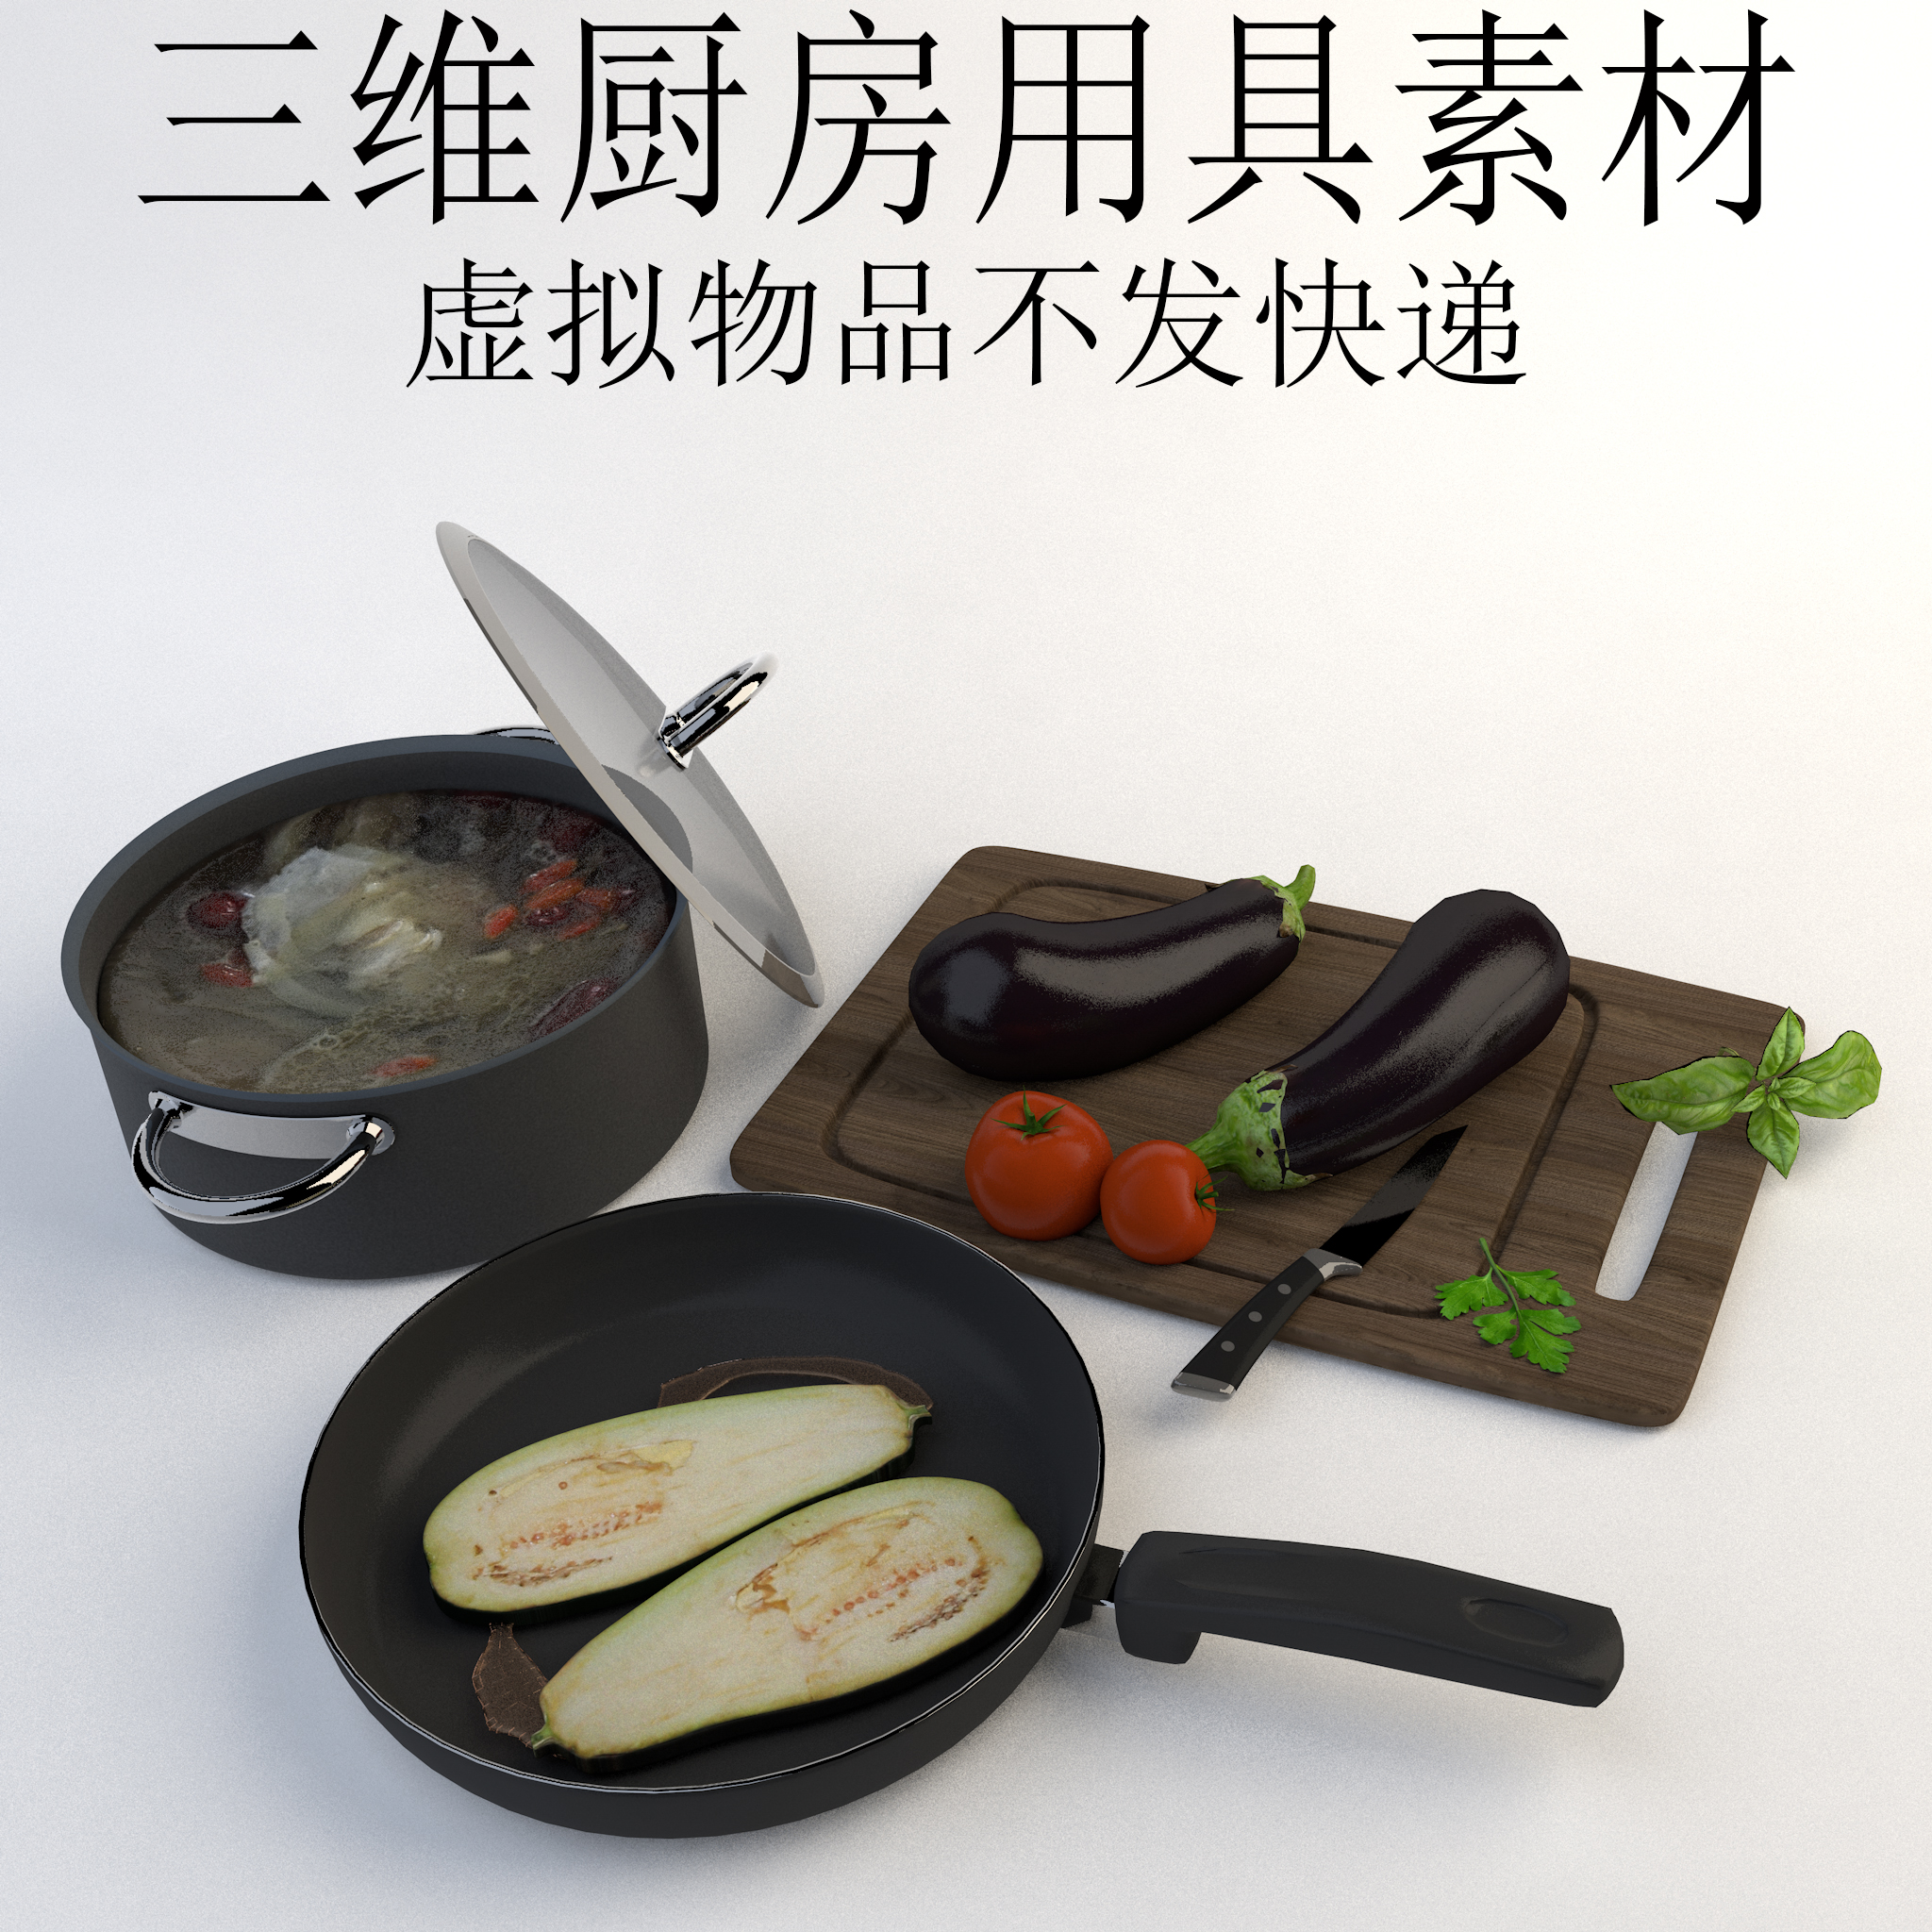 三维C4D厨房用具素材3ds汤锅fbx炒锅菜板茄子obj